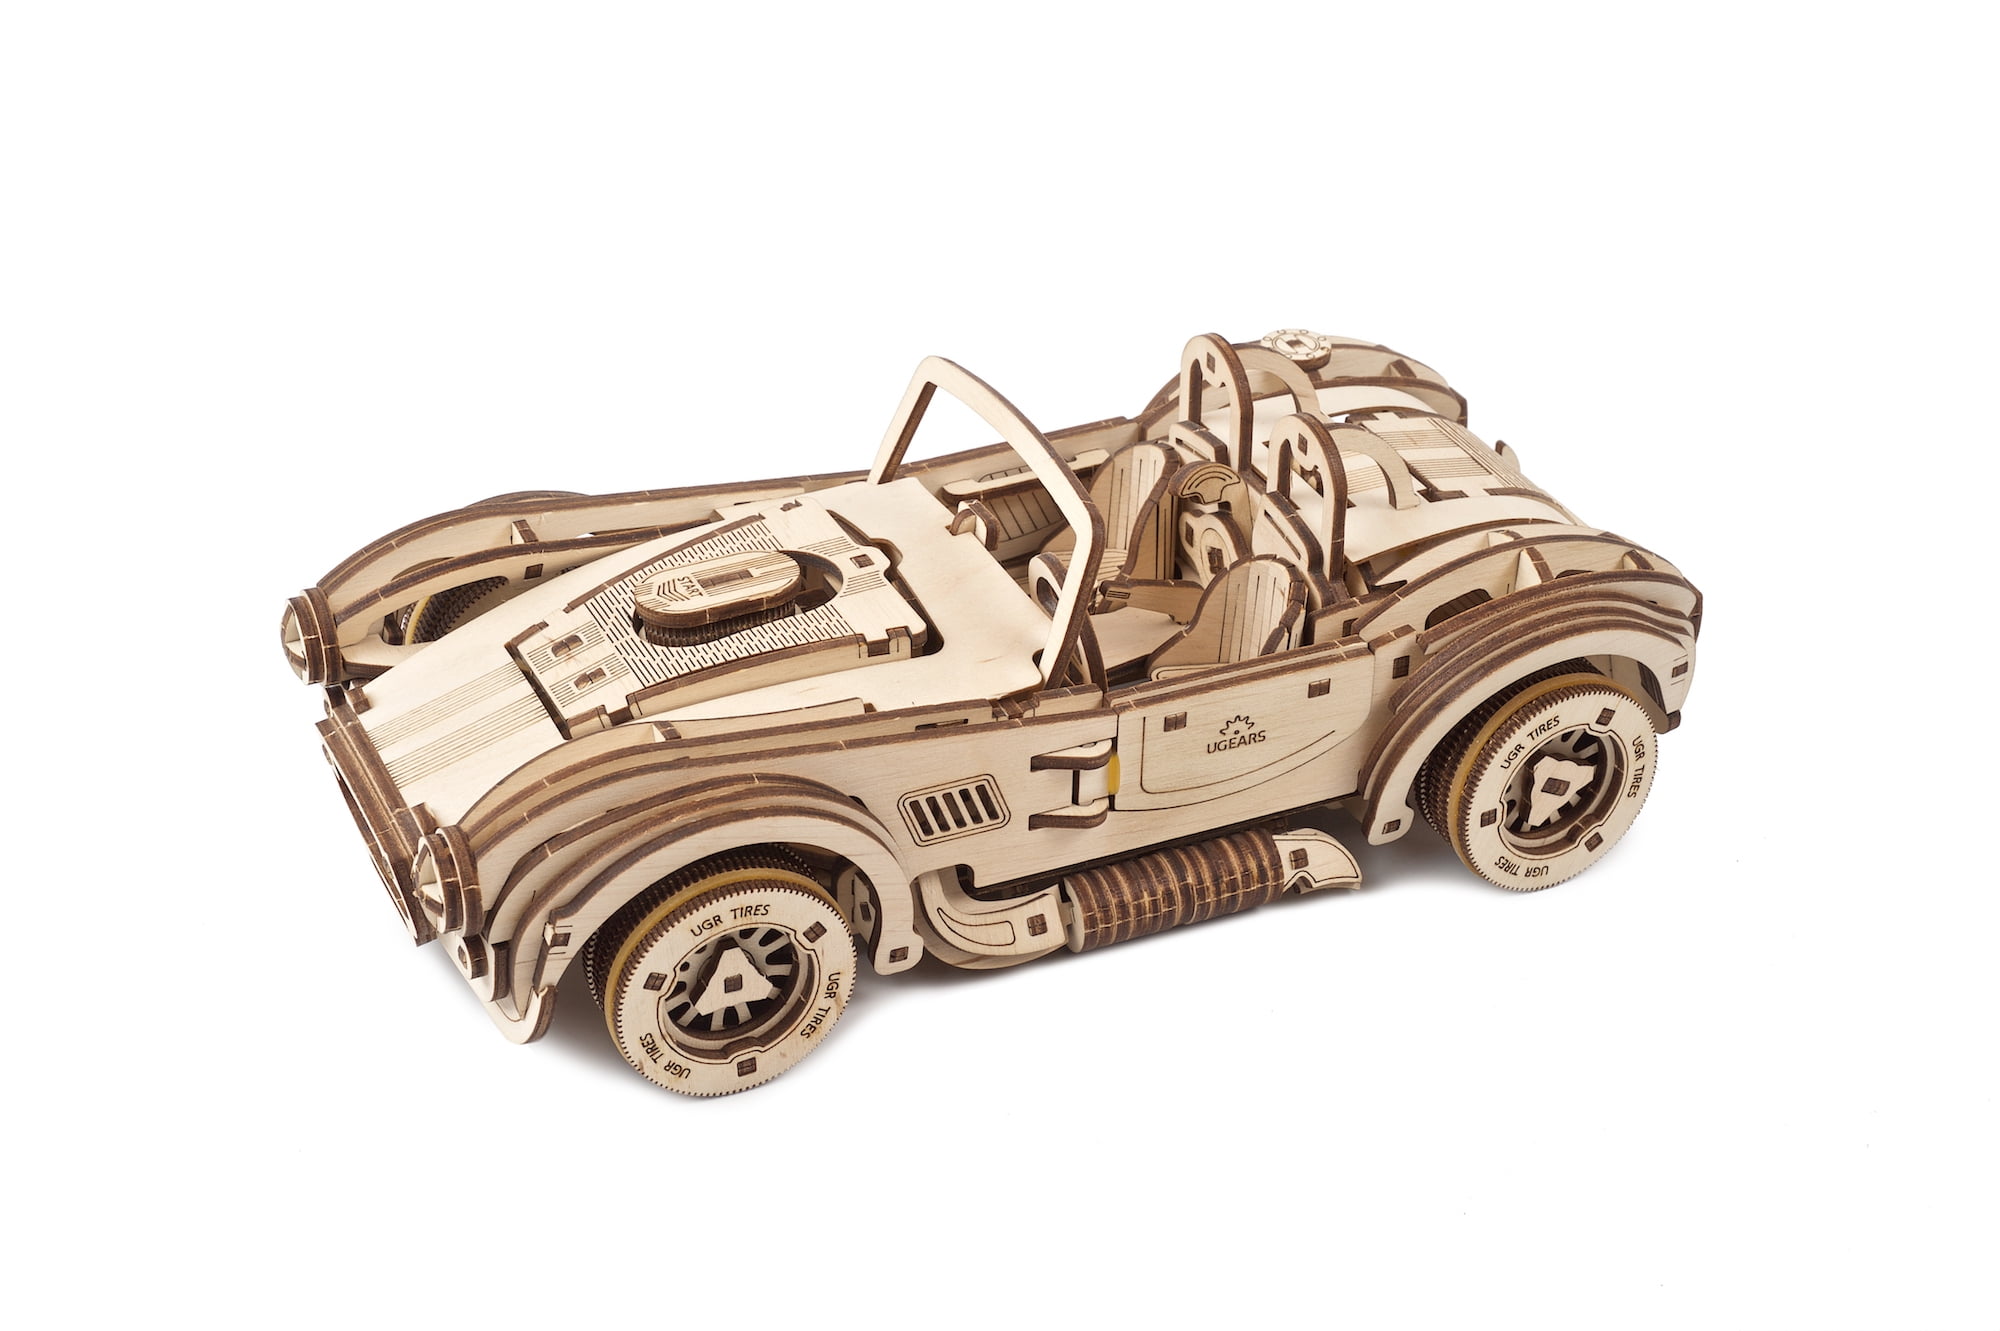 Laser Cut Wooden Formula 1 Race Car 3D Model/Puzzle Kit